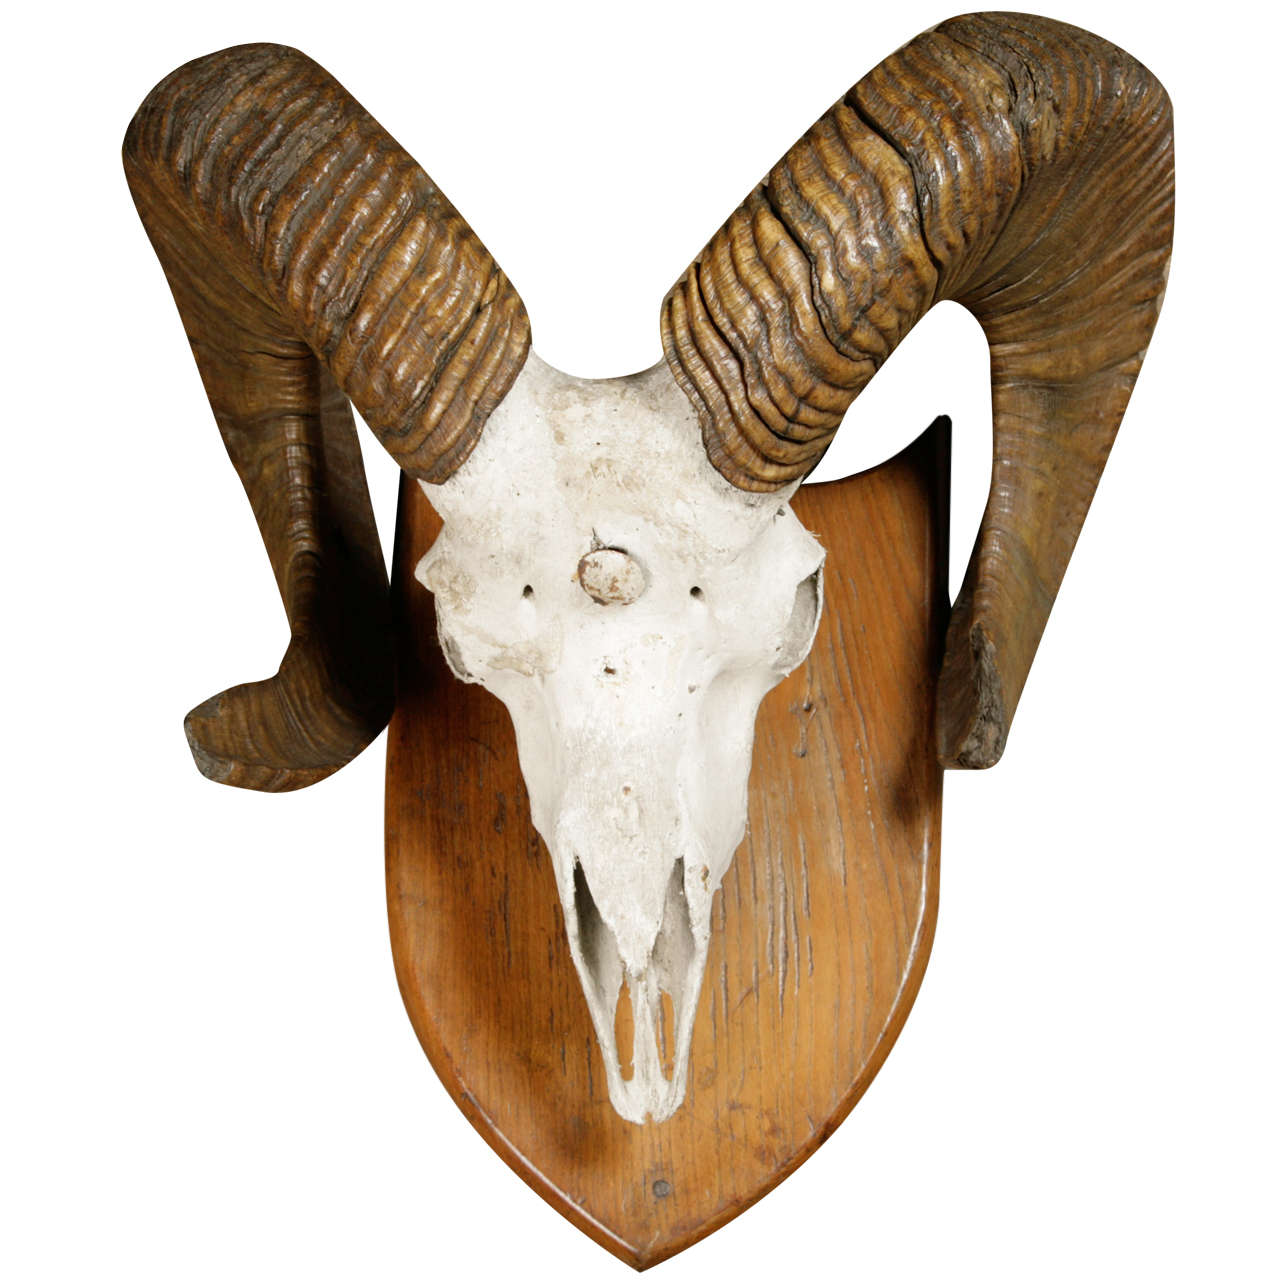 A Skull and Horns of a Argali Sheep